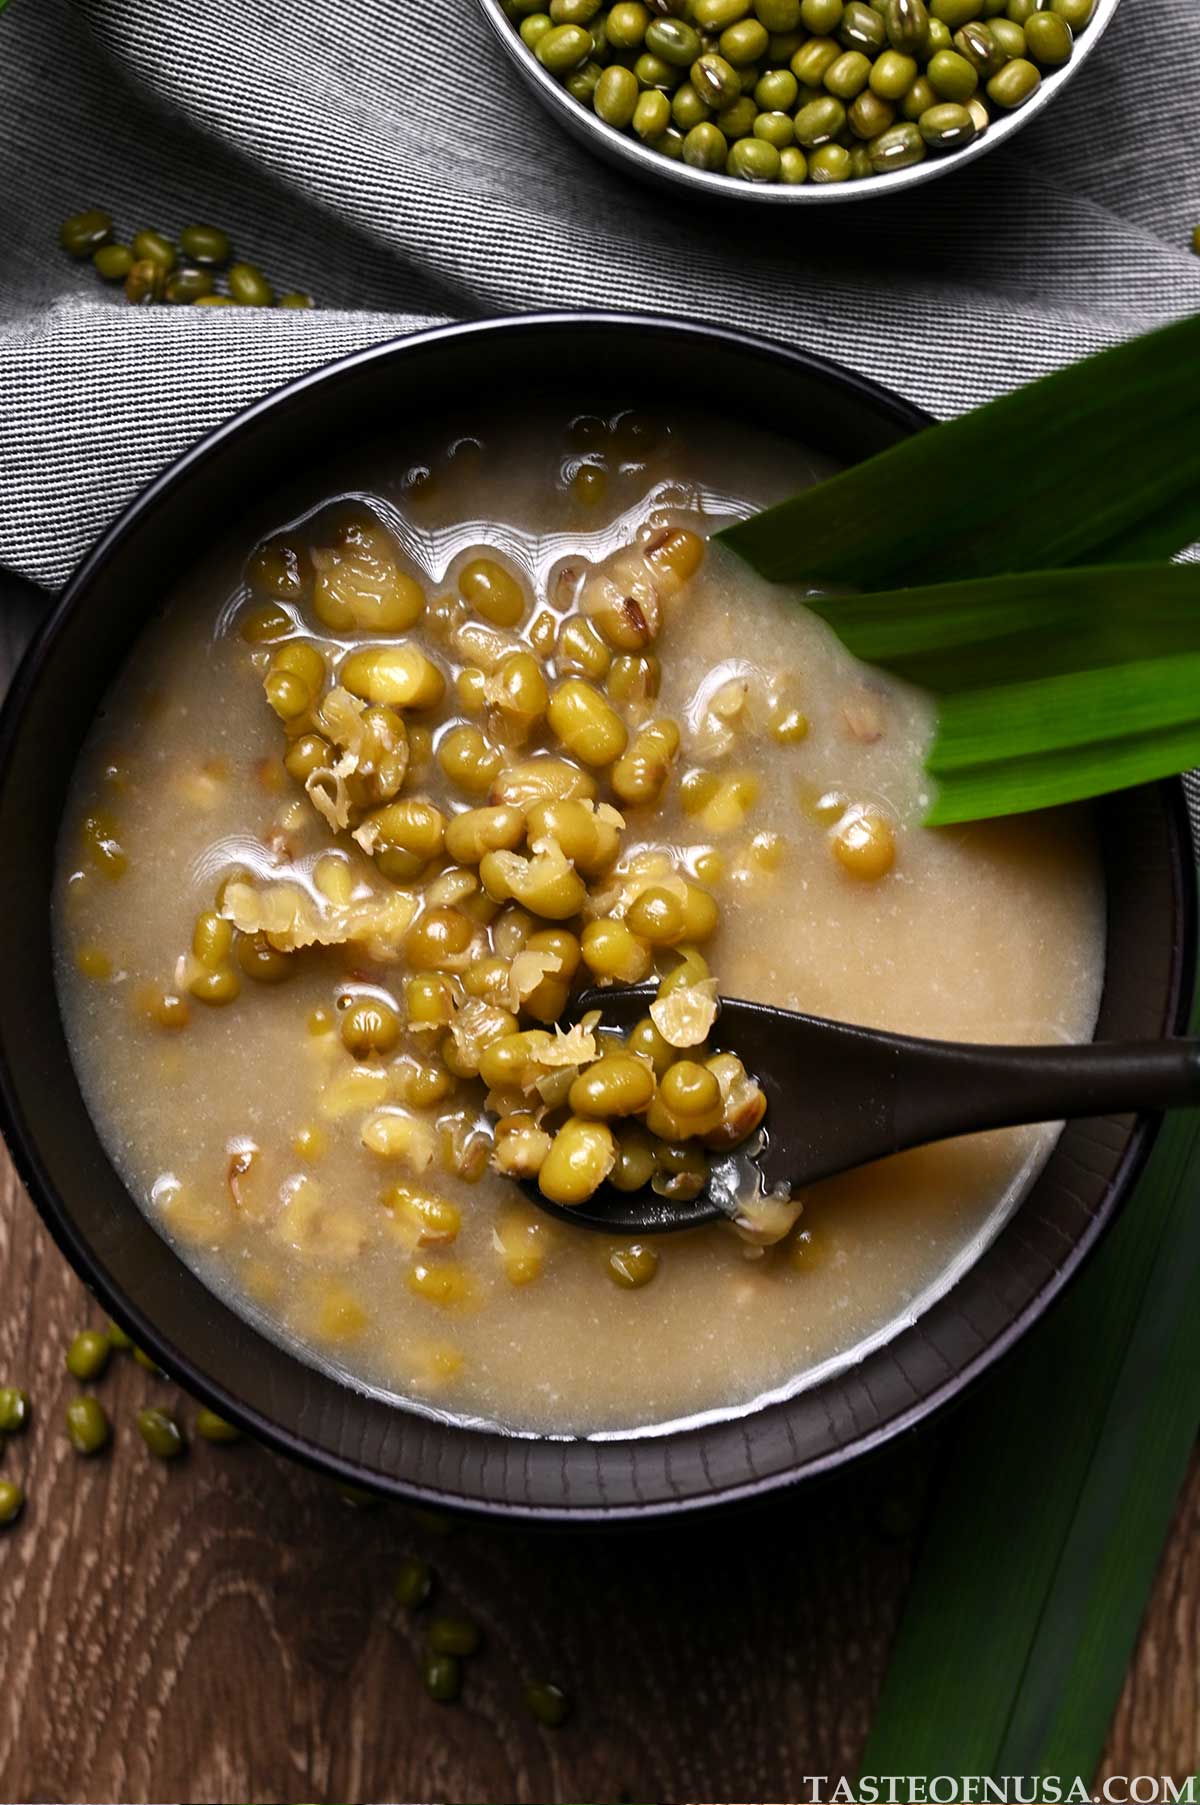 mung bean soup or bubur kacang hijau